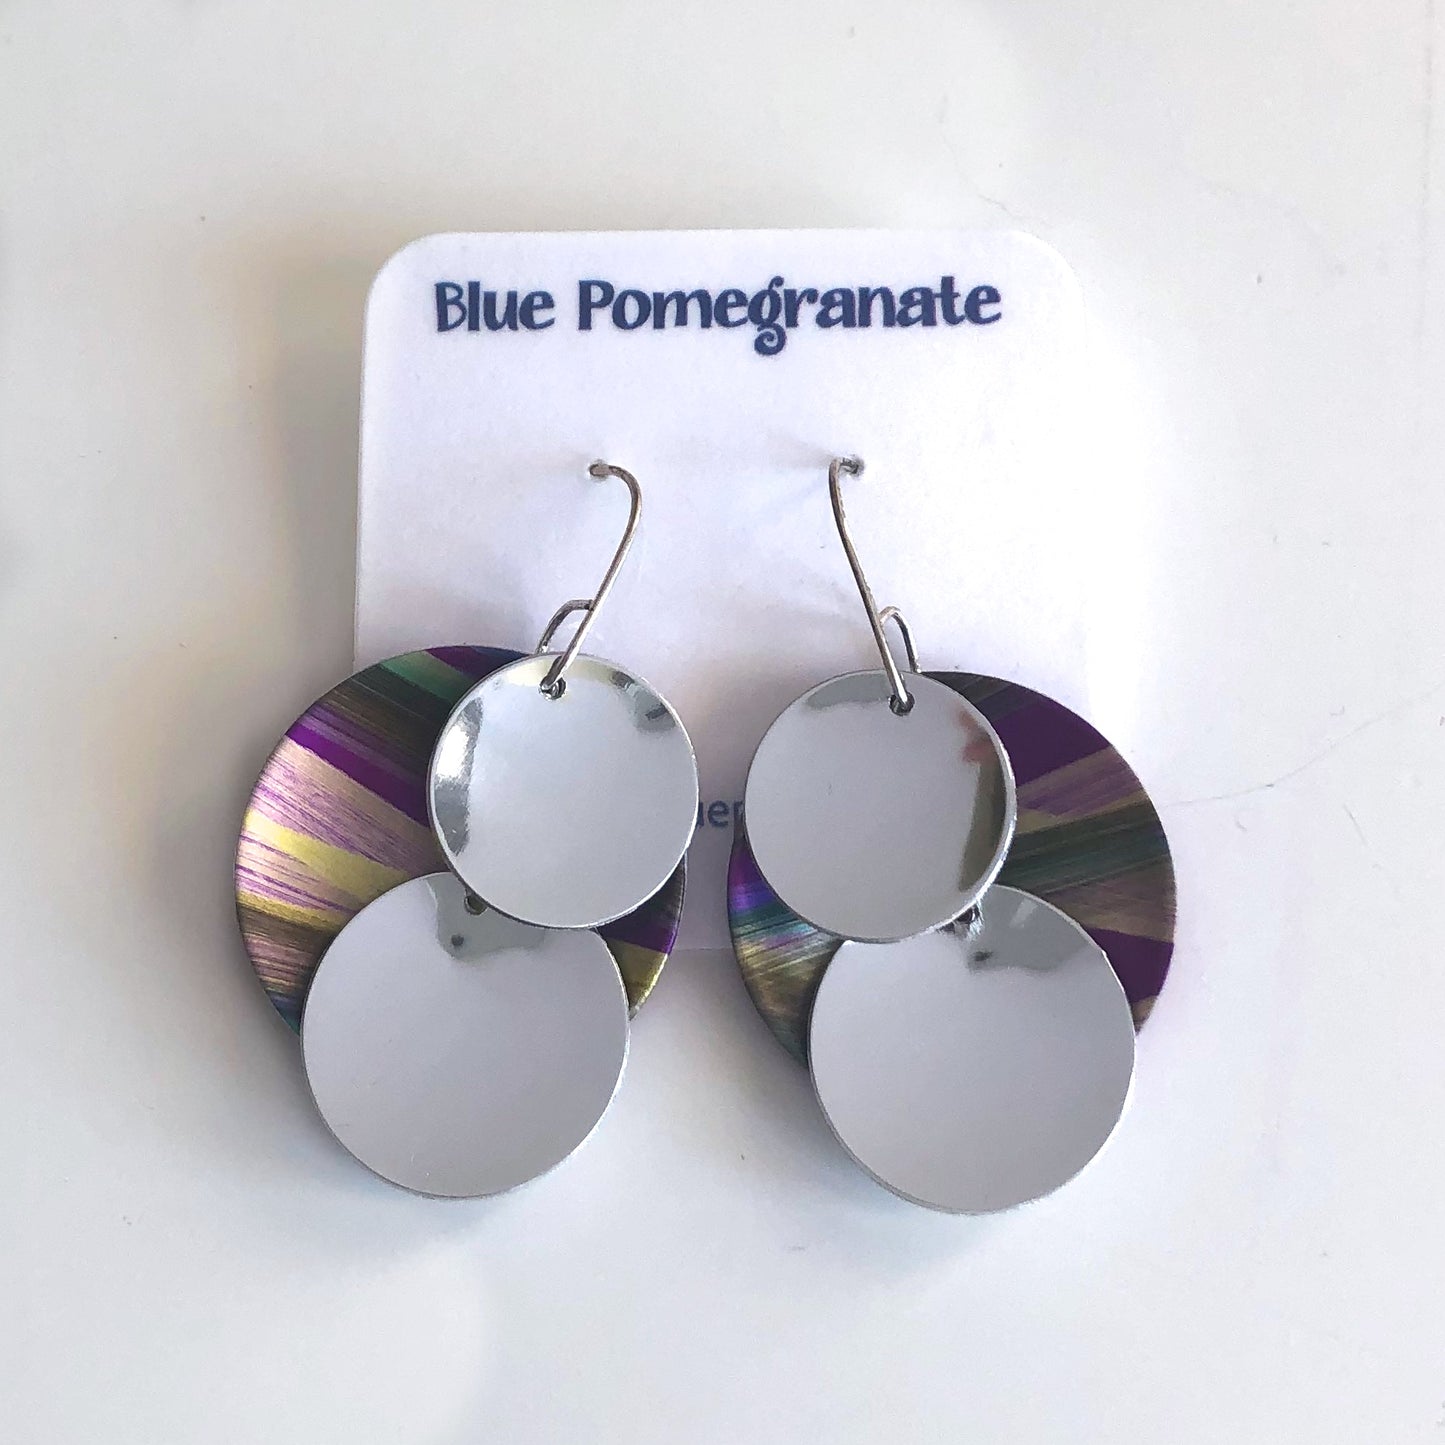 Anodized Aluminum, Sterling Silver Earrings by Jon Klar - © Blue Pomegranate Gallery